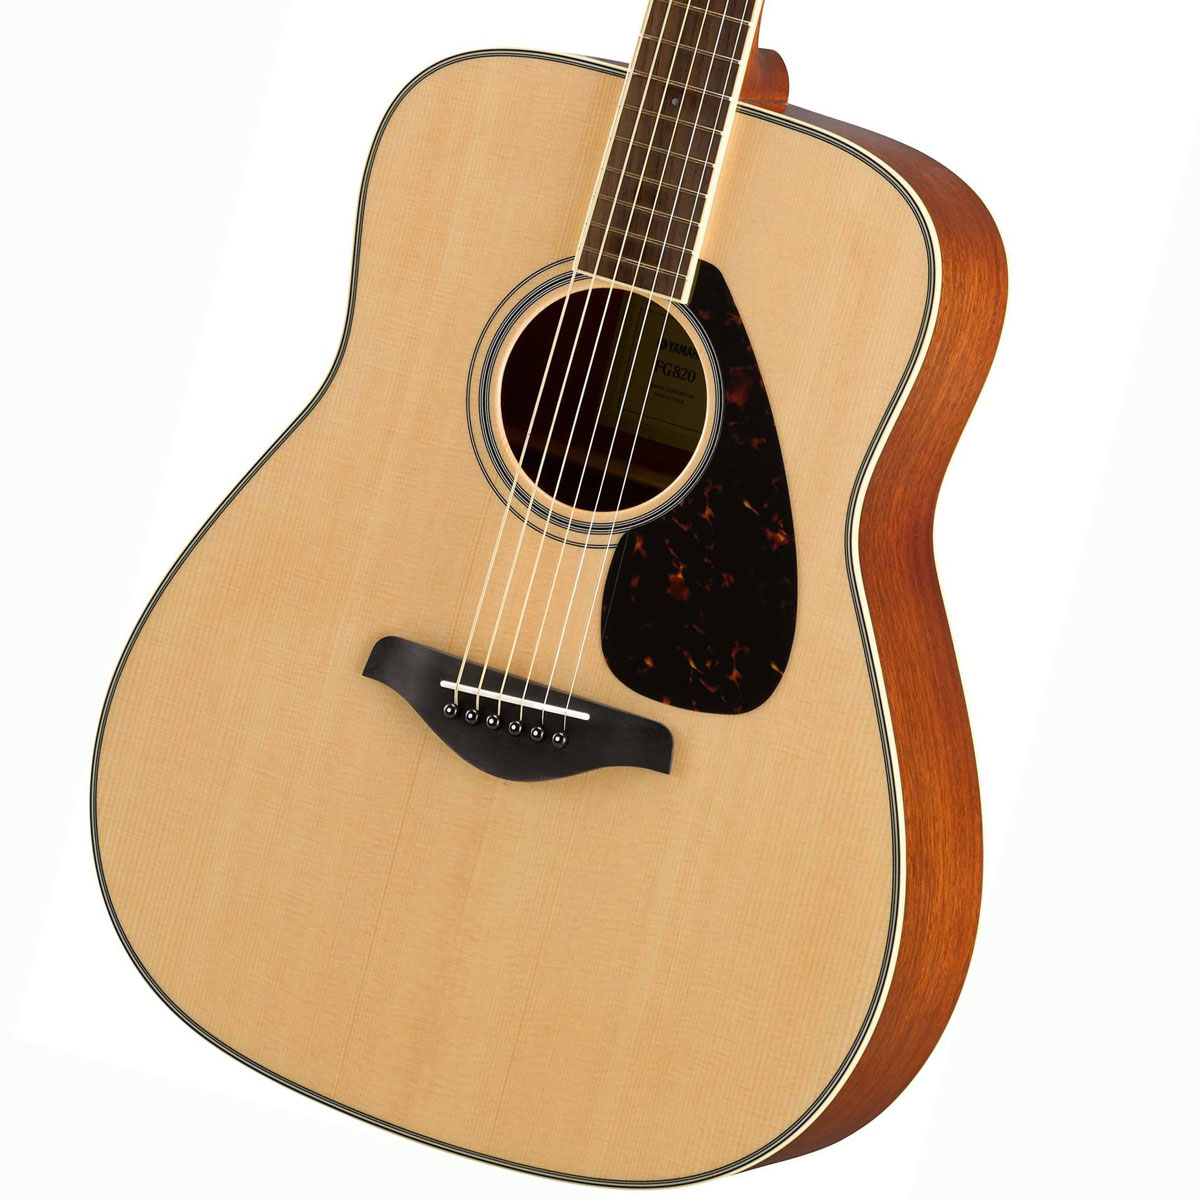  YAMAHA   FG820 NT (ナチュラル) ヤマハ アコースティックギター フォークギター アコギ FG-820 入門 初心者《 4582600680067》